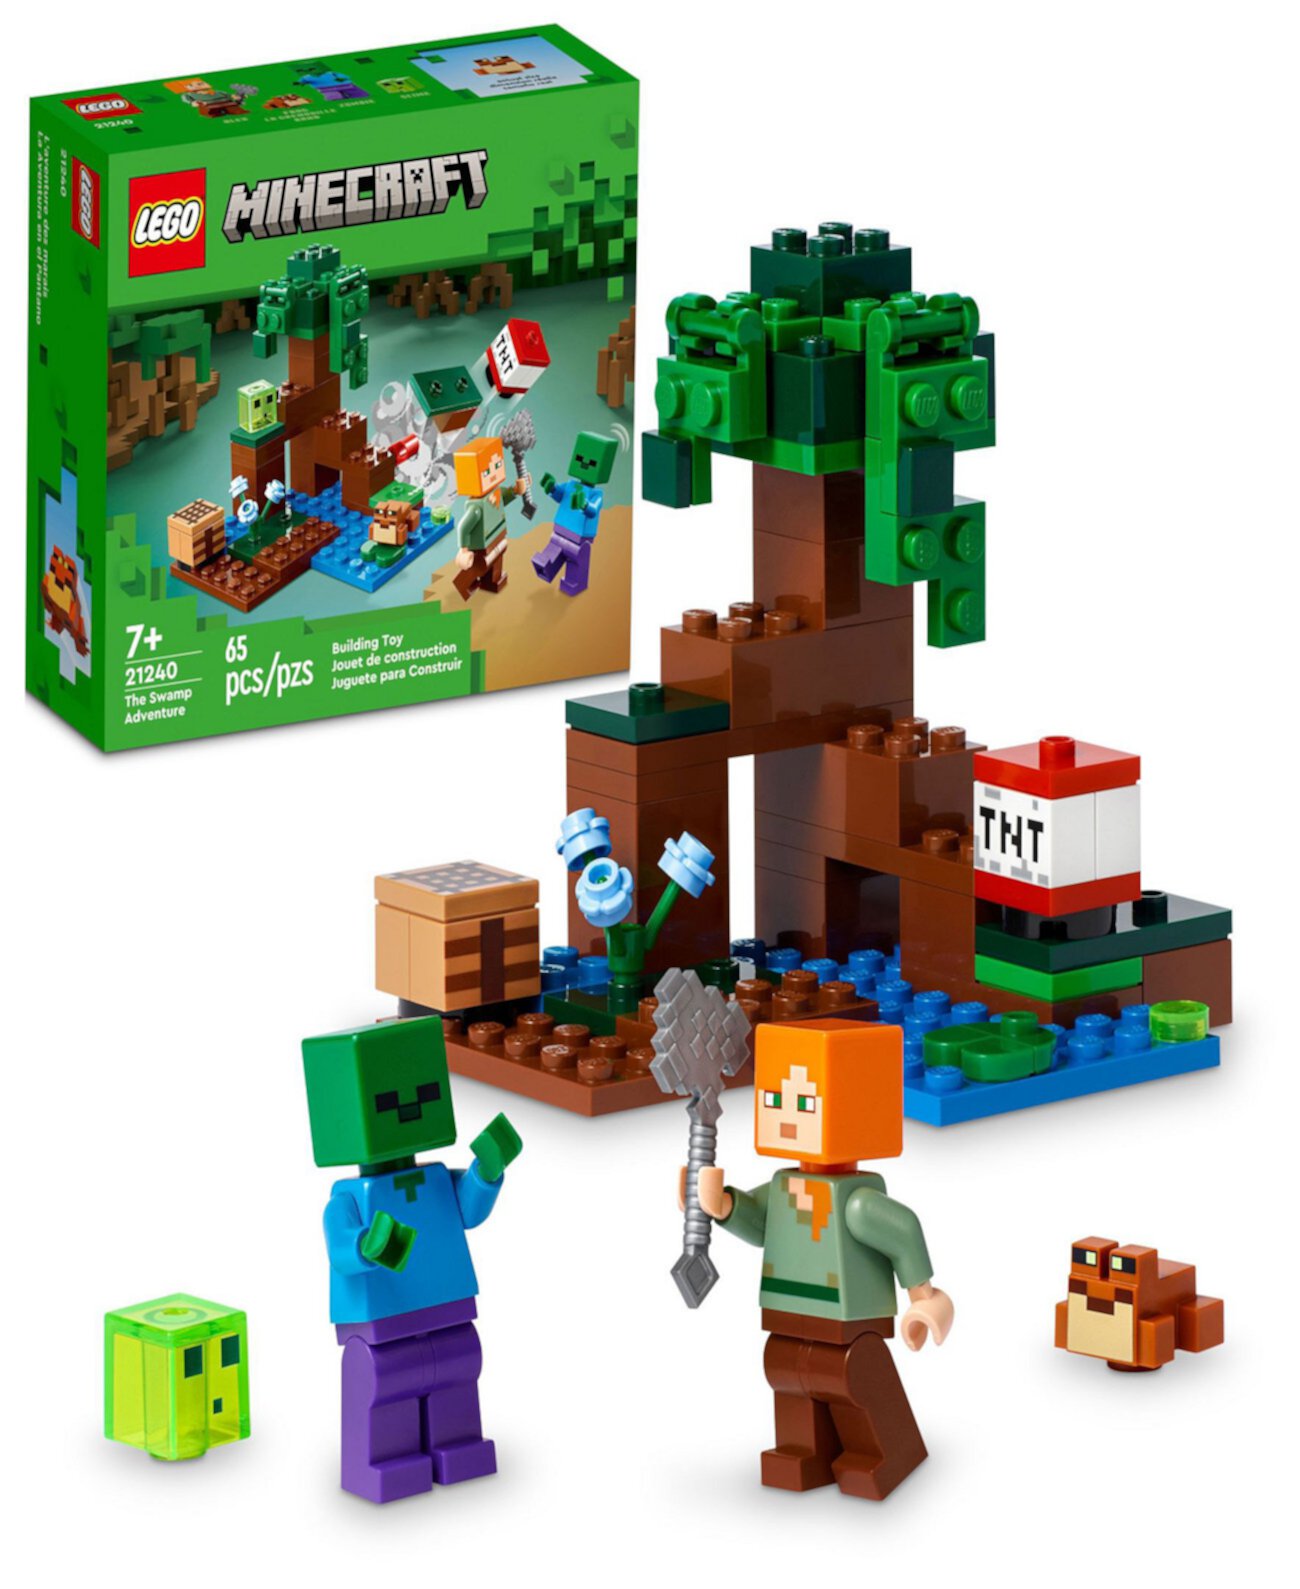 Minecraft Приключение в Болоте 21240 Игровой Набор с Алекс, Зомби, Слизнем и Лягушкой Lego